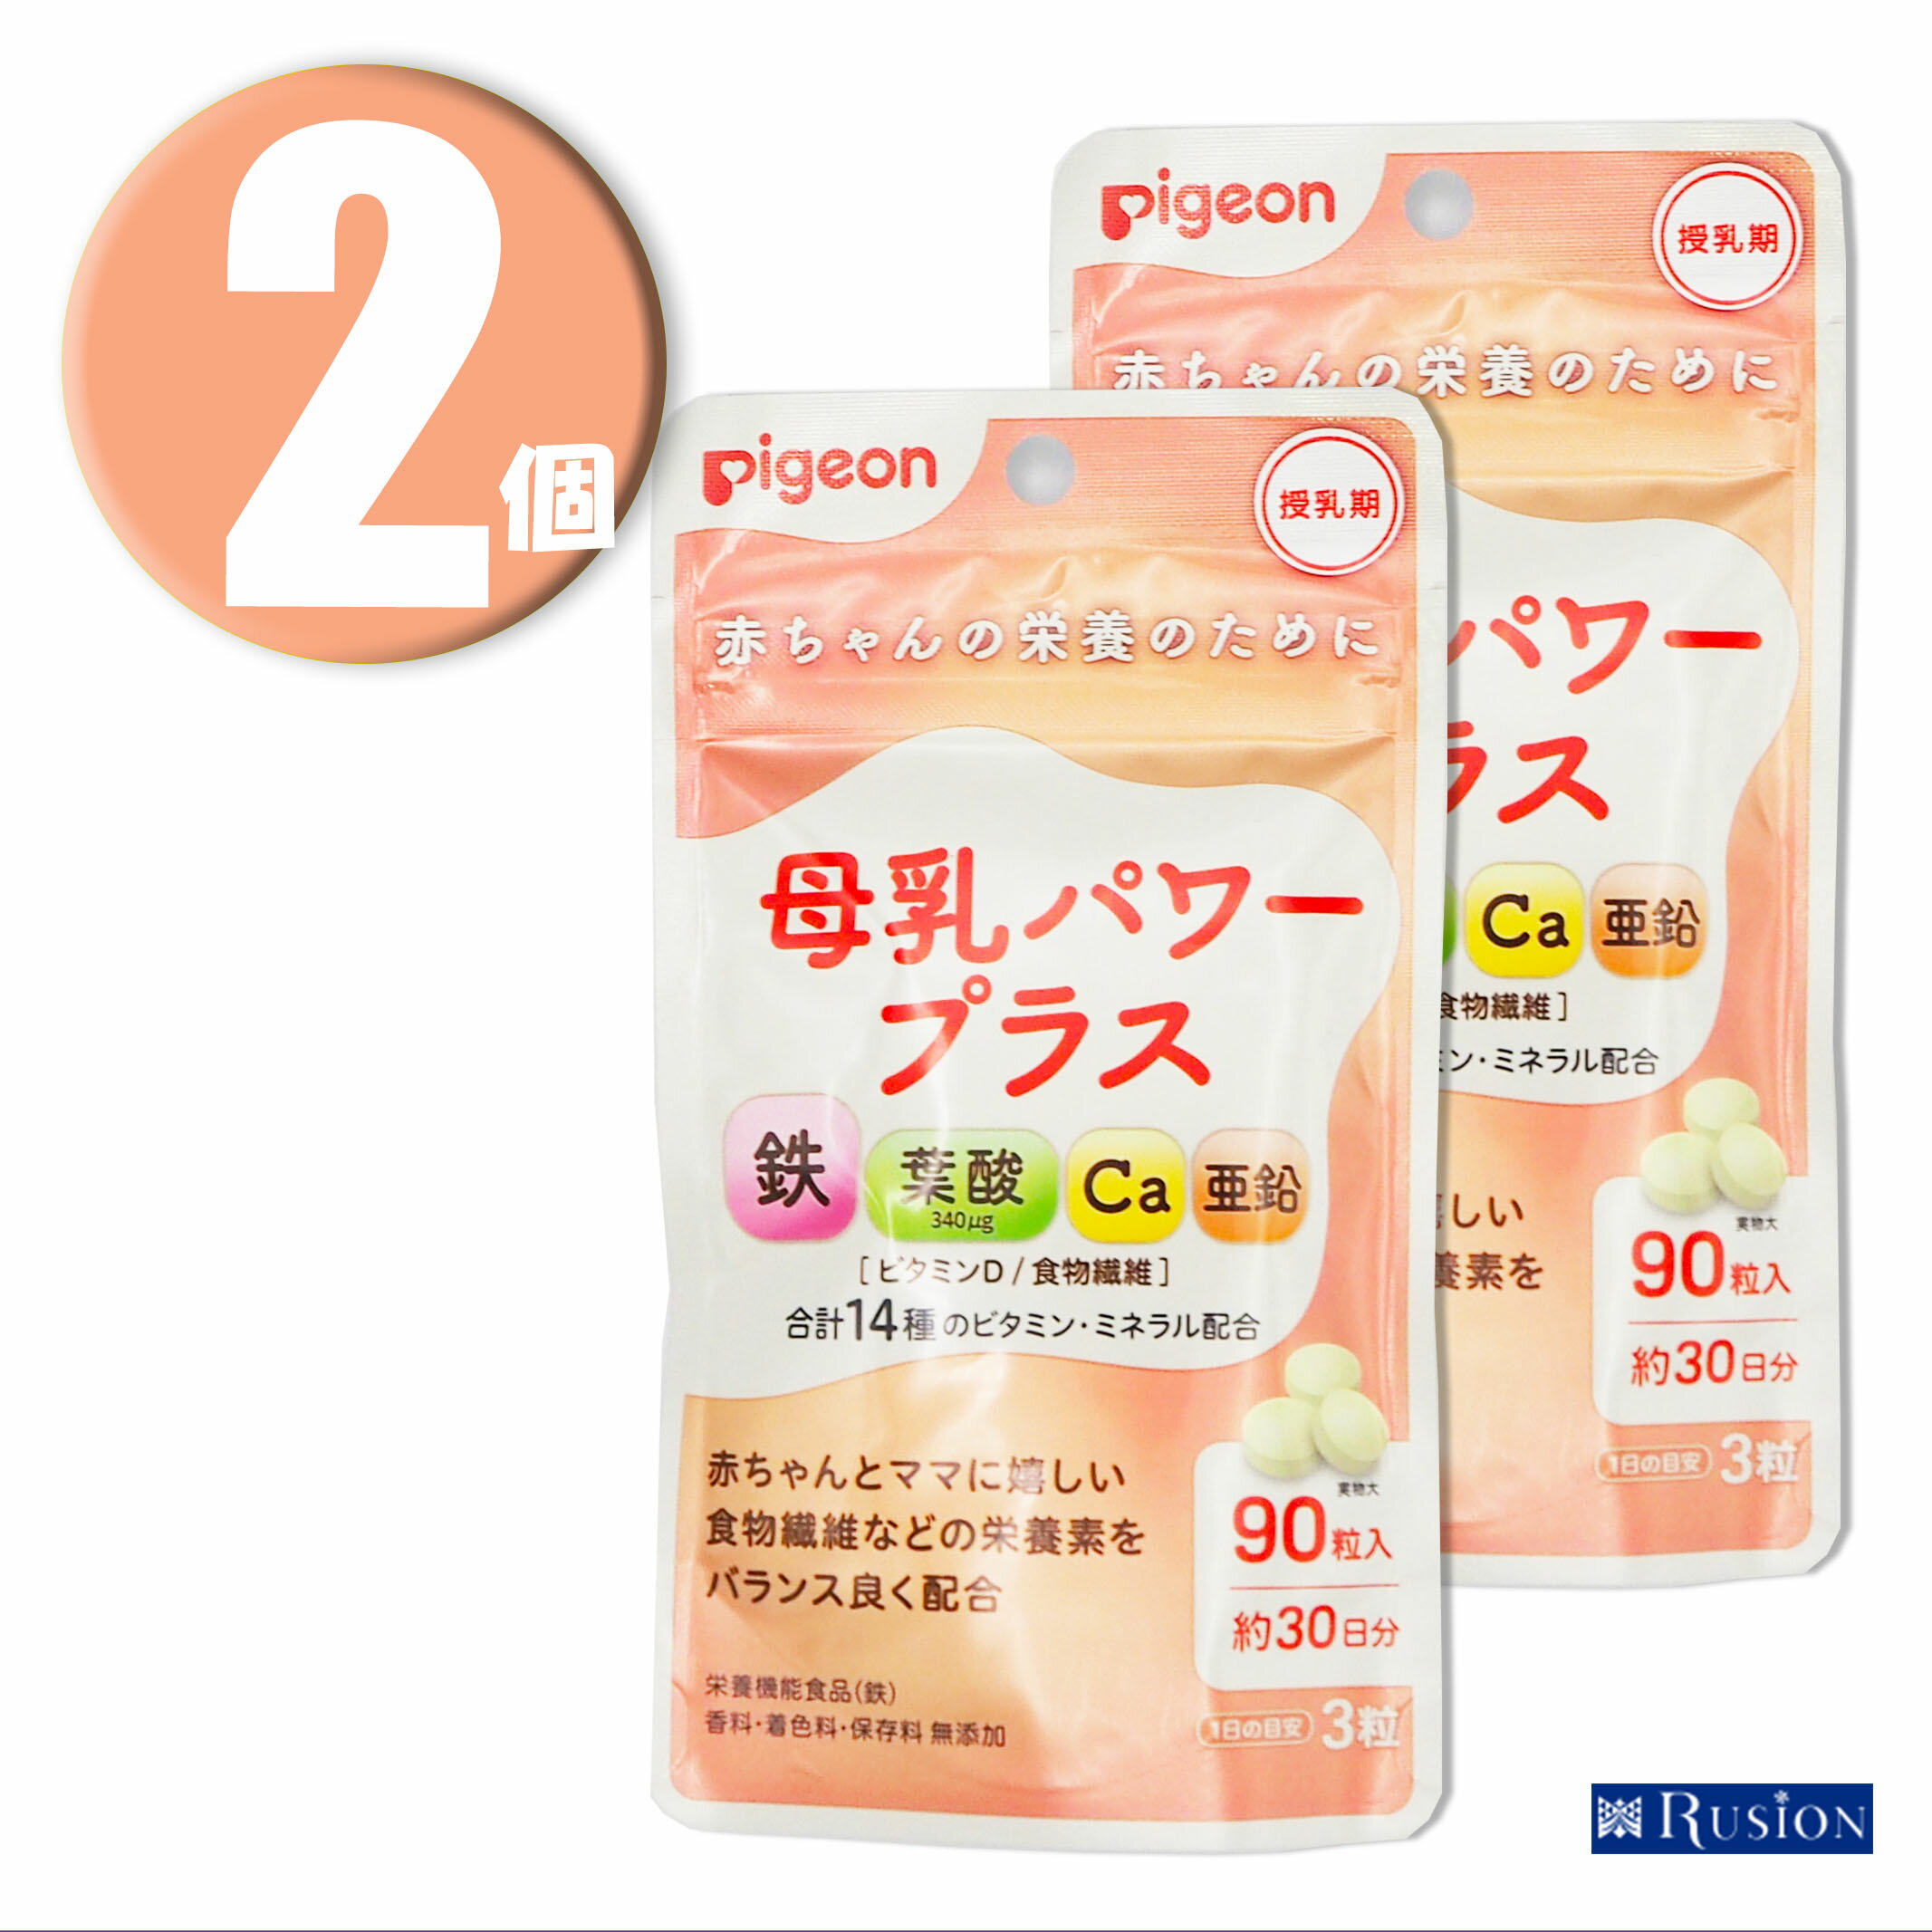 (2個) Pigeon ピジョン サプリメント 母乳パワープラス 錠剤タイプ 90粒 約30日分 栄養機能食品 ×2個 授乳期